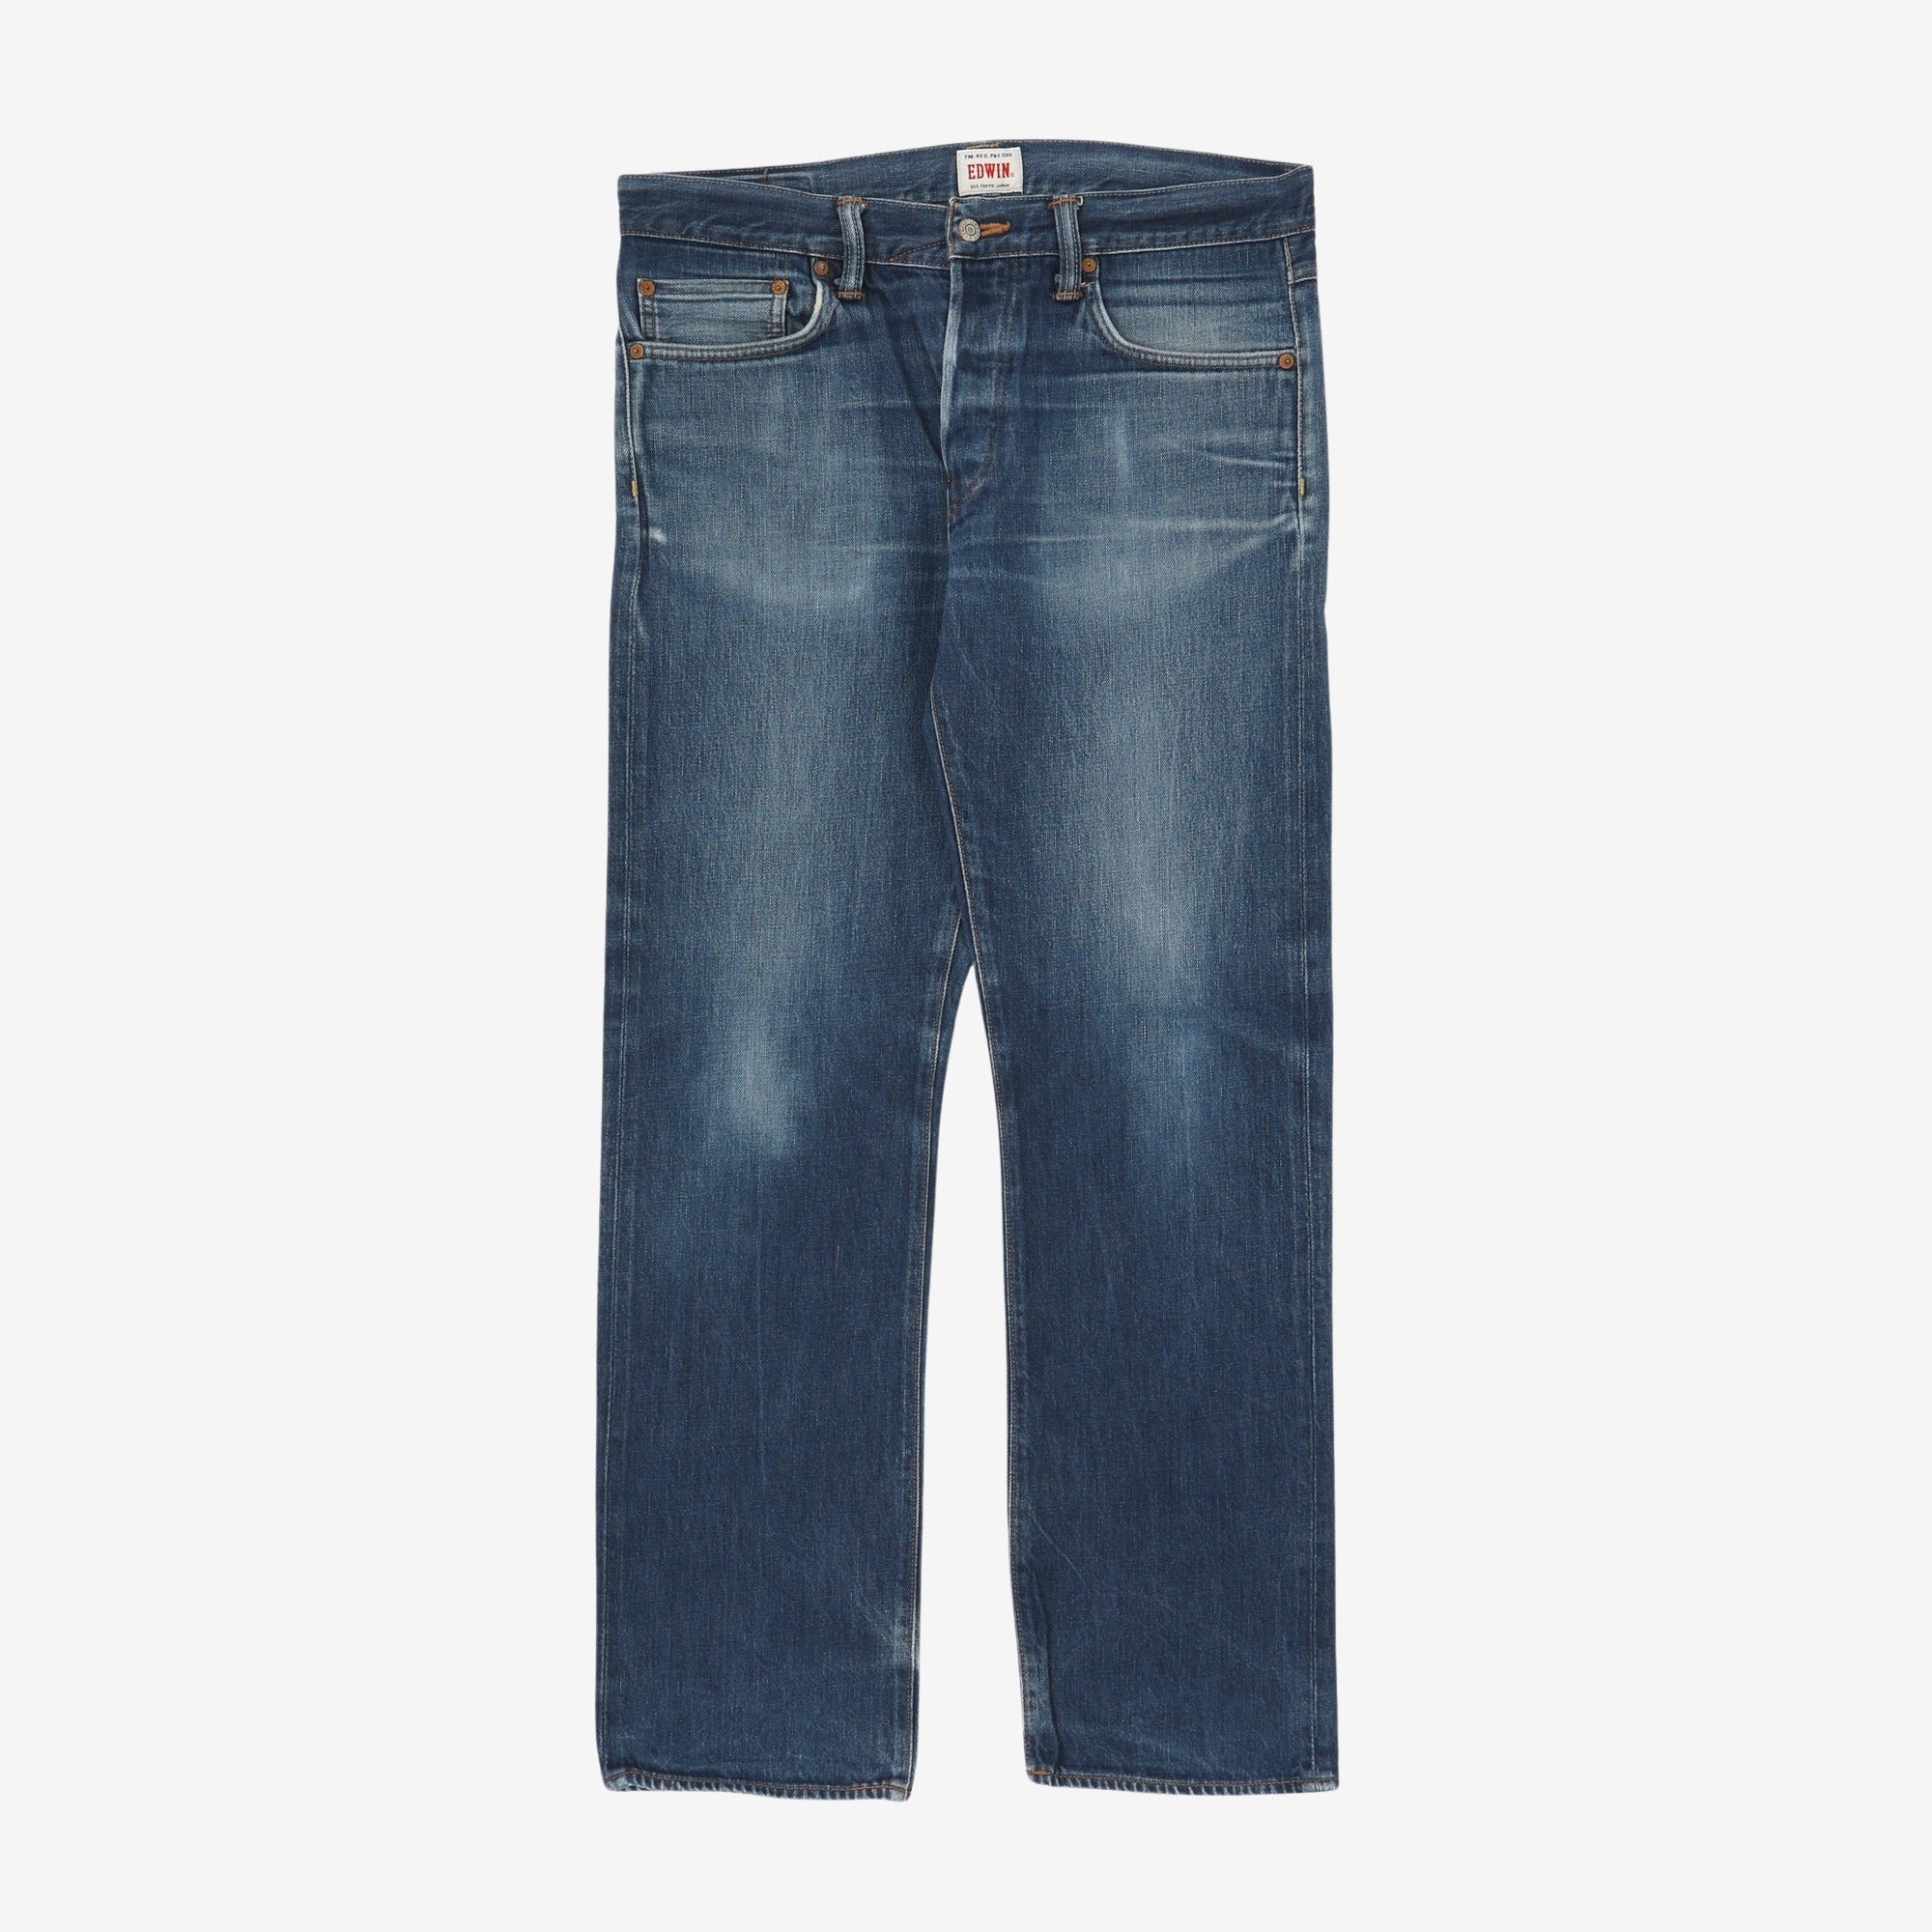 Denim Jeans (36W x 31L)